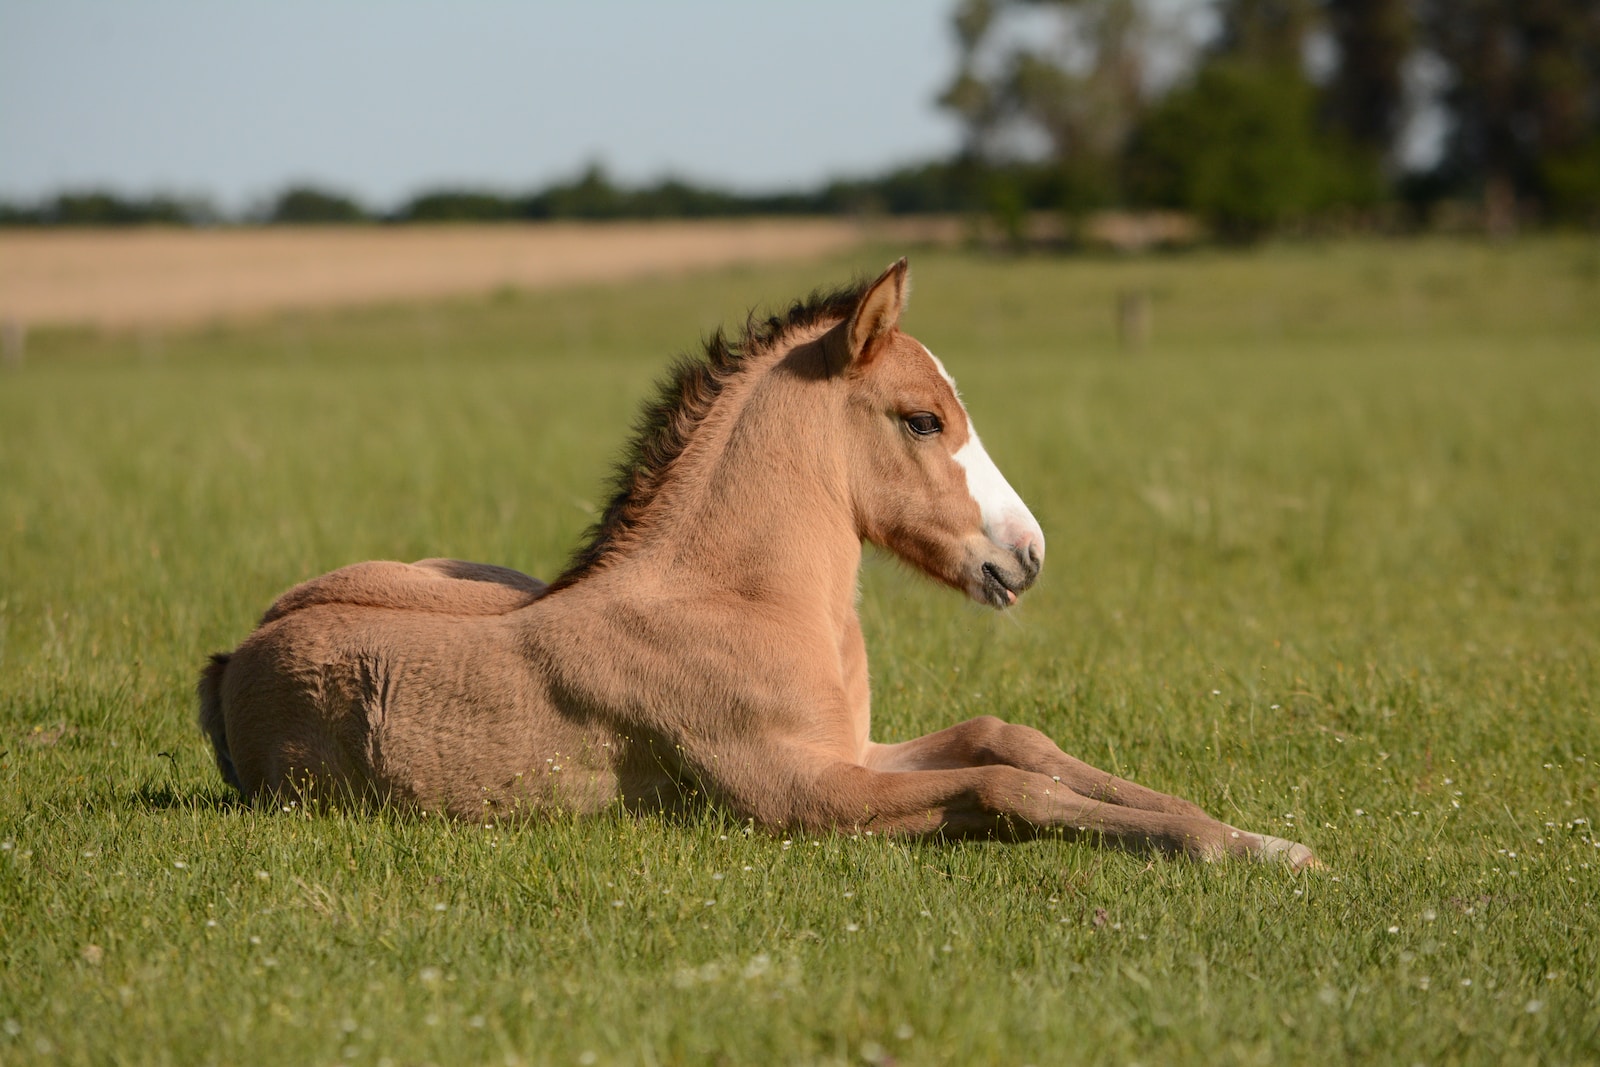 Gelassenheit finden: Wie man ein nervöses Pferd beruhigt und eine harmonische Reitbeziehung aufbaut